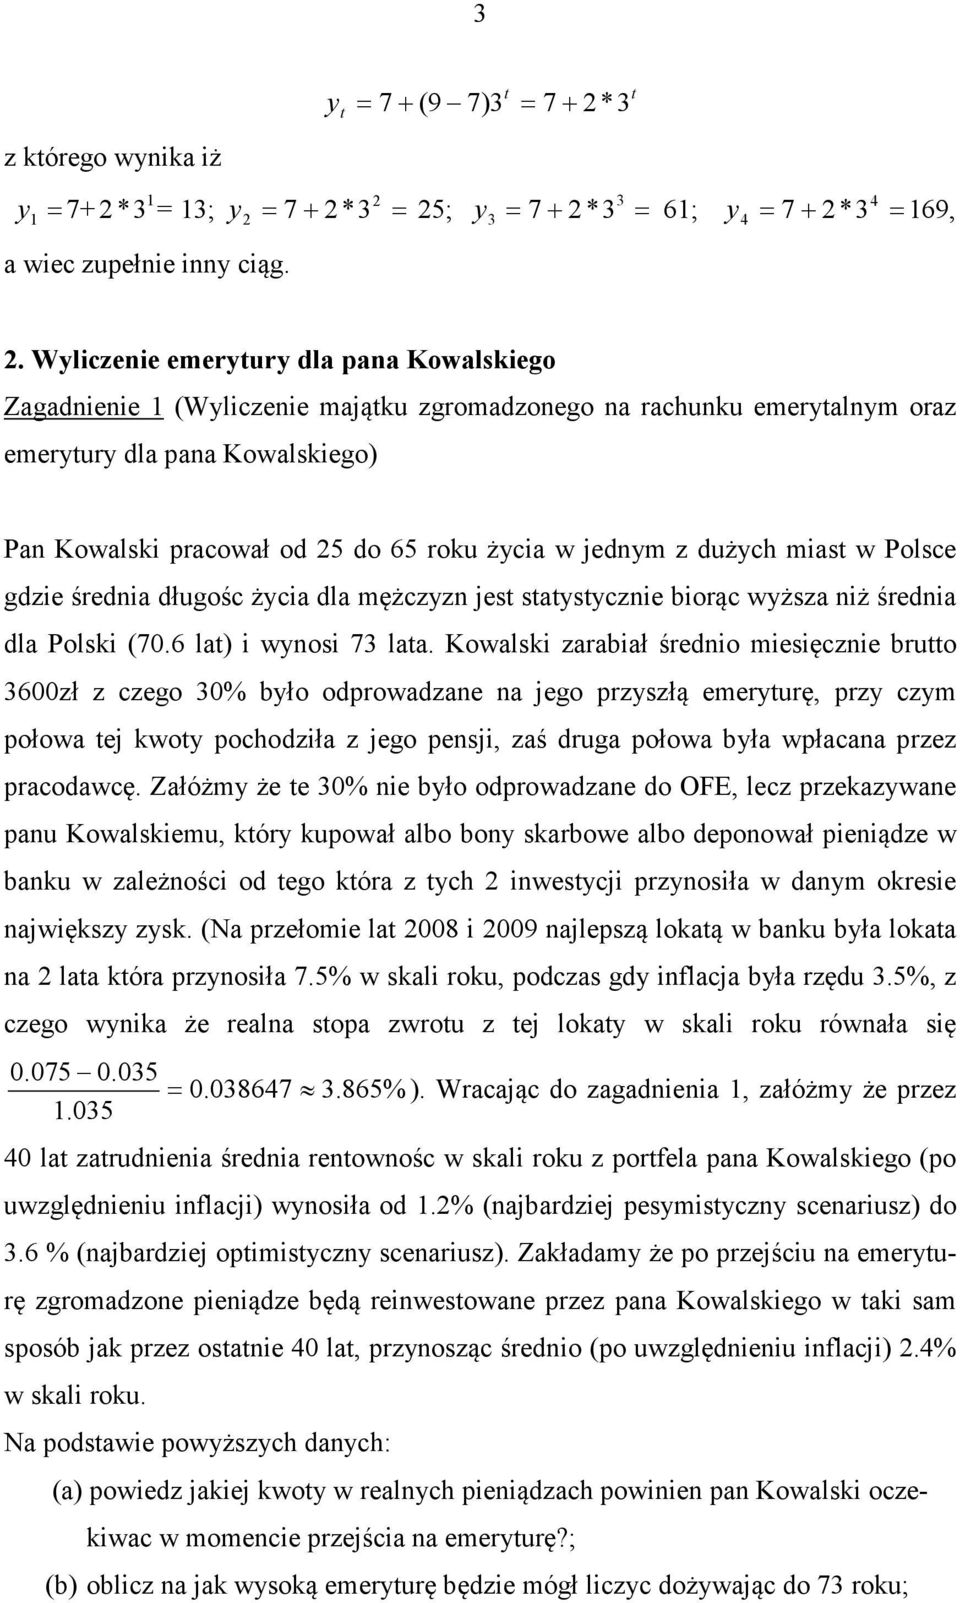 jednym z dużych mias w Polsce gdzie średnia długośc życia dla mężczyzn jes saysycznie biorąc wyższa niż średnia dla Polski (7.6 la) i wynosi 7 laa.